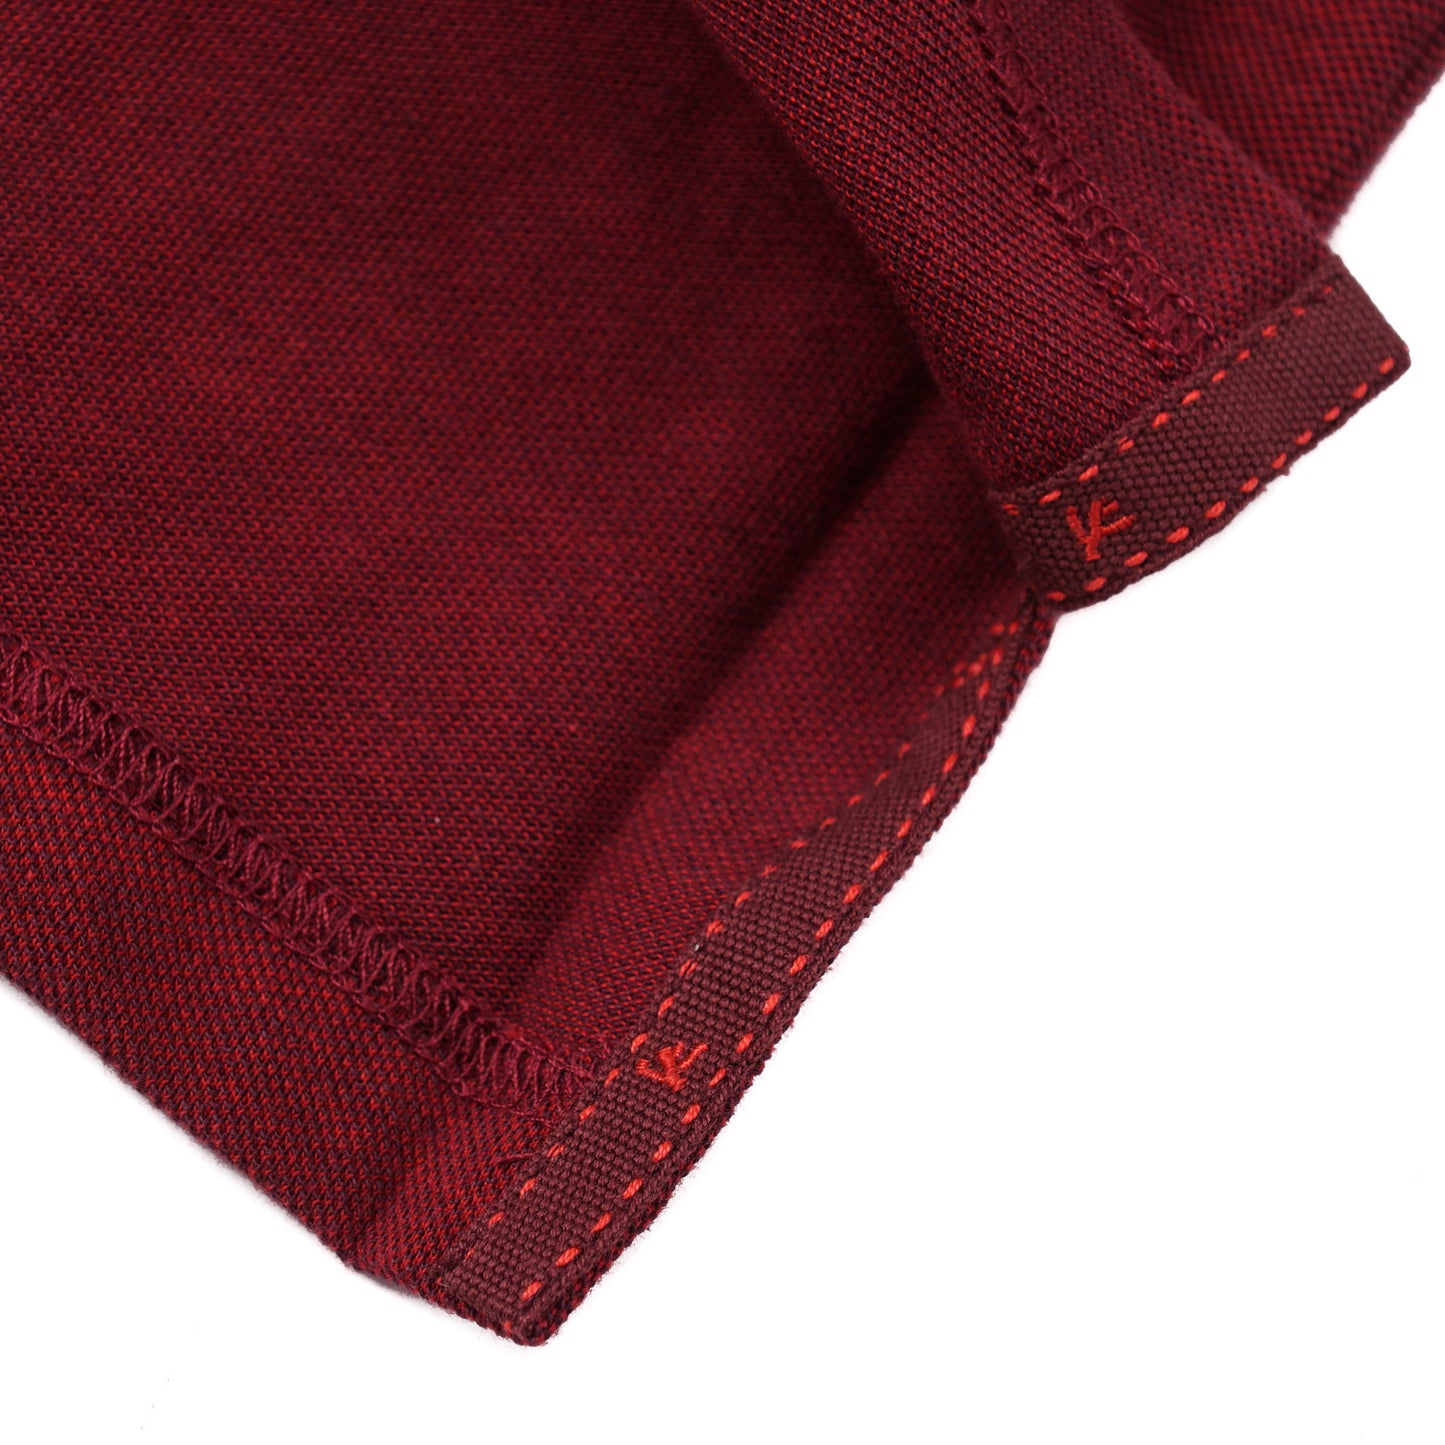 Isaia Long Sleeve Pique Cotton Polo Shirt - Top Shelf Apparel